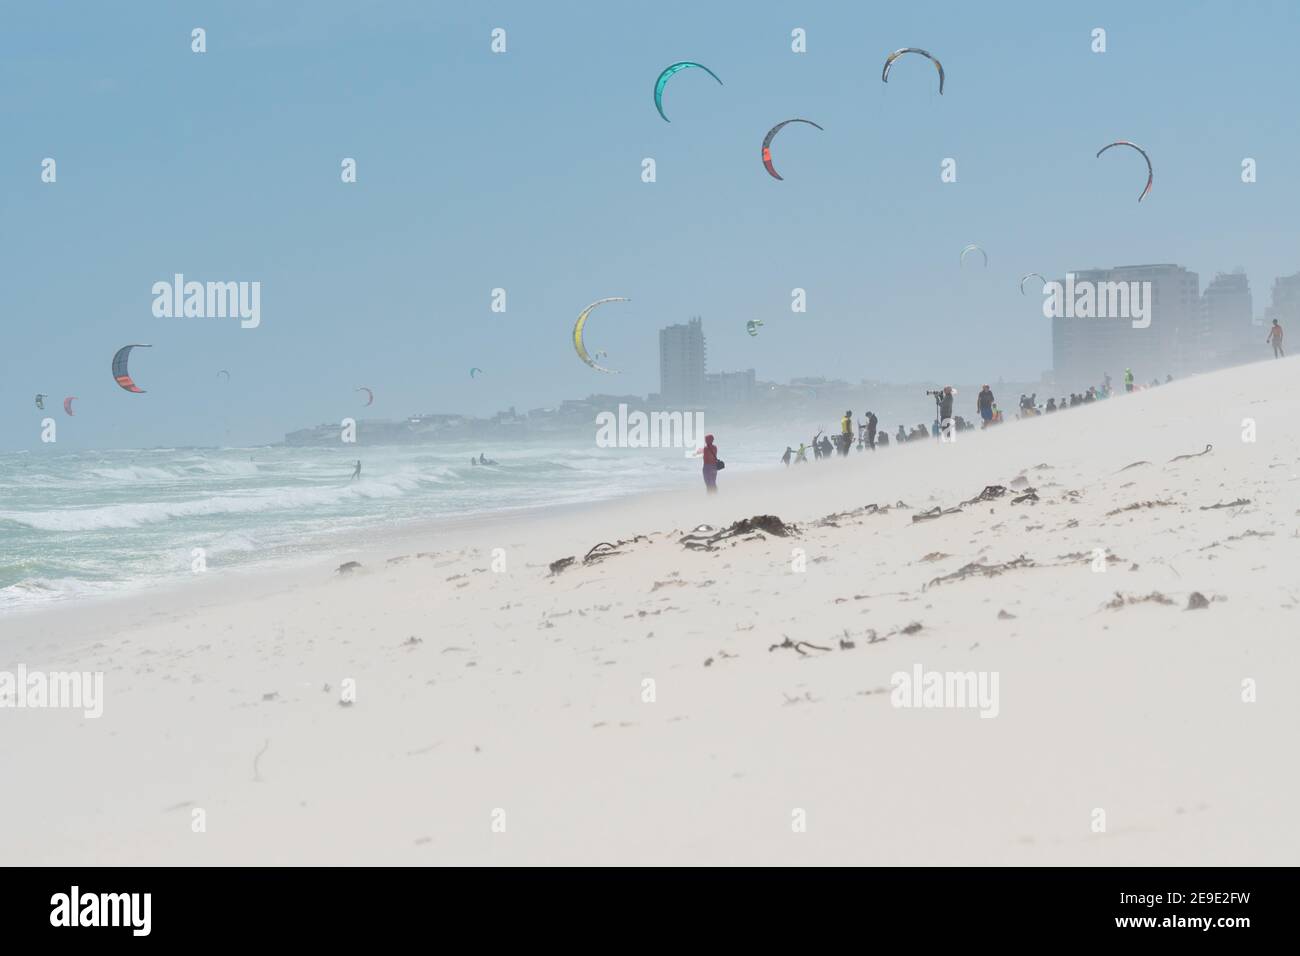 concours international de kiteboarding Red Bull sur la plage de Bloubergstrand au Cap, en Afrique du Sud, lors d'une journée venteuse avec des personnes photographiant l'événement Banque D'Images